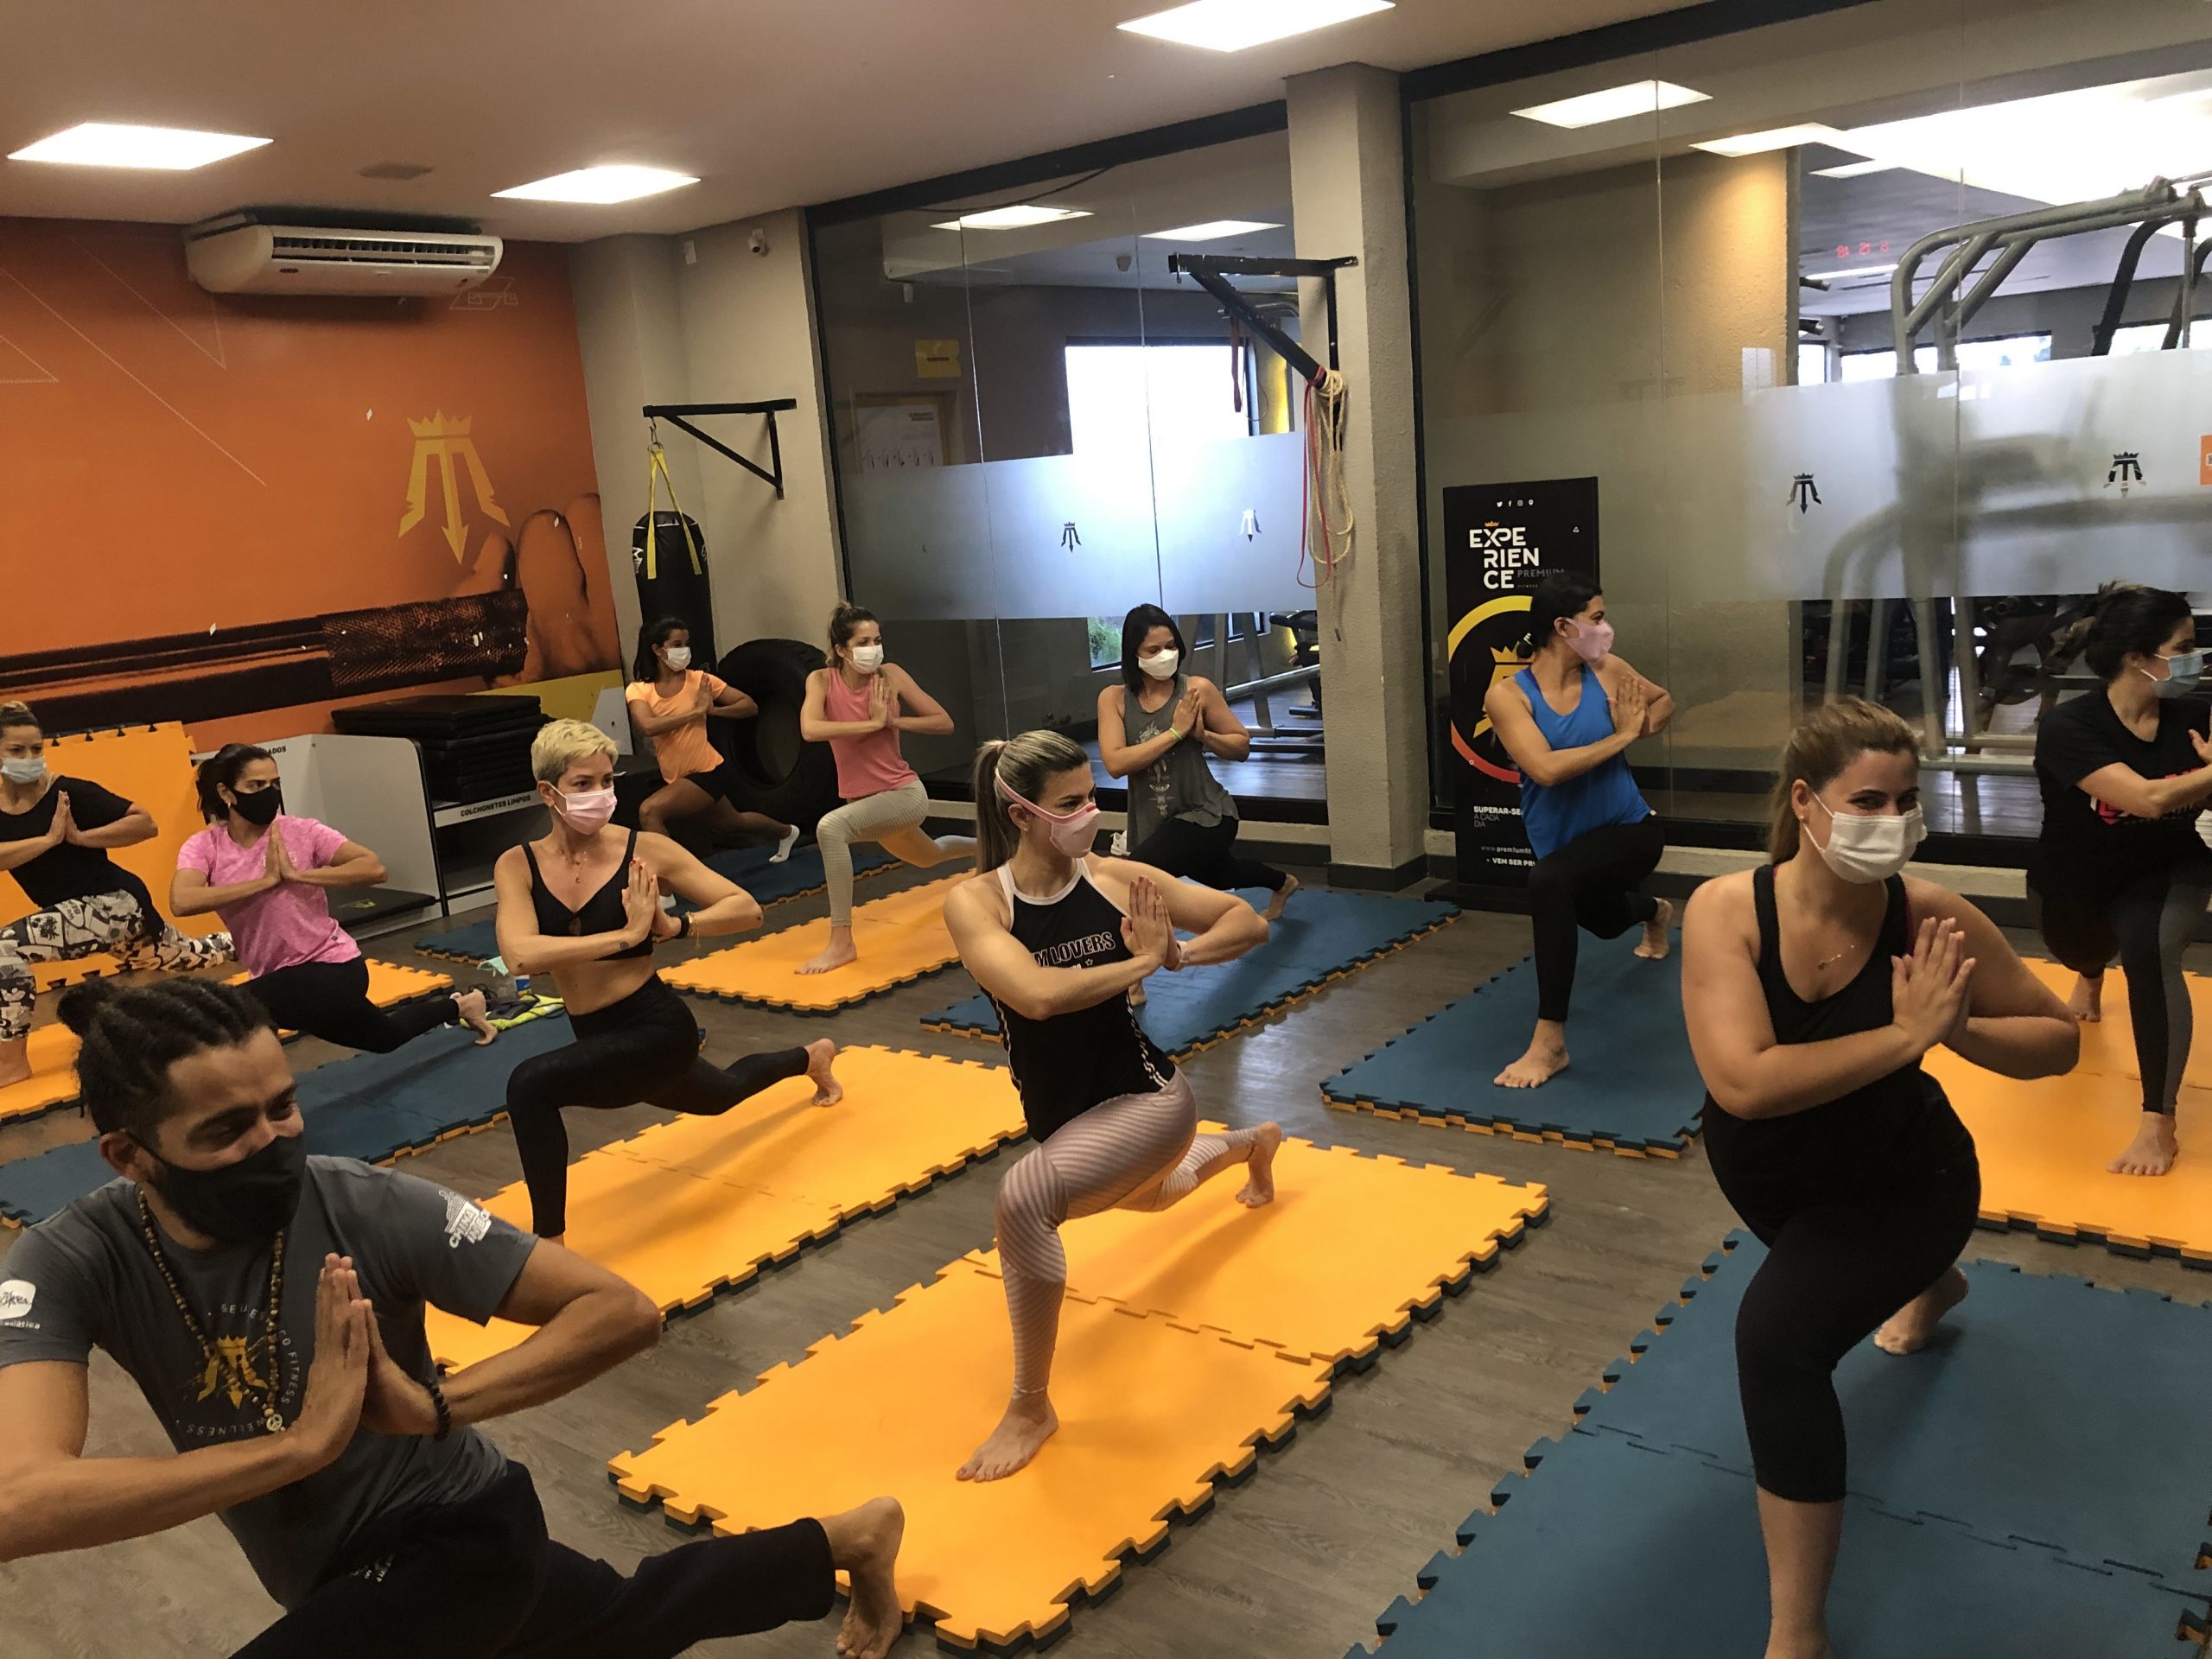  KUNDALINI YOGA |  Modalidade Prem1um Fitness | Academia em Maceió | O seu espaço fitness e wellness em Maceió